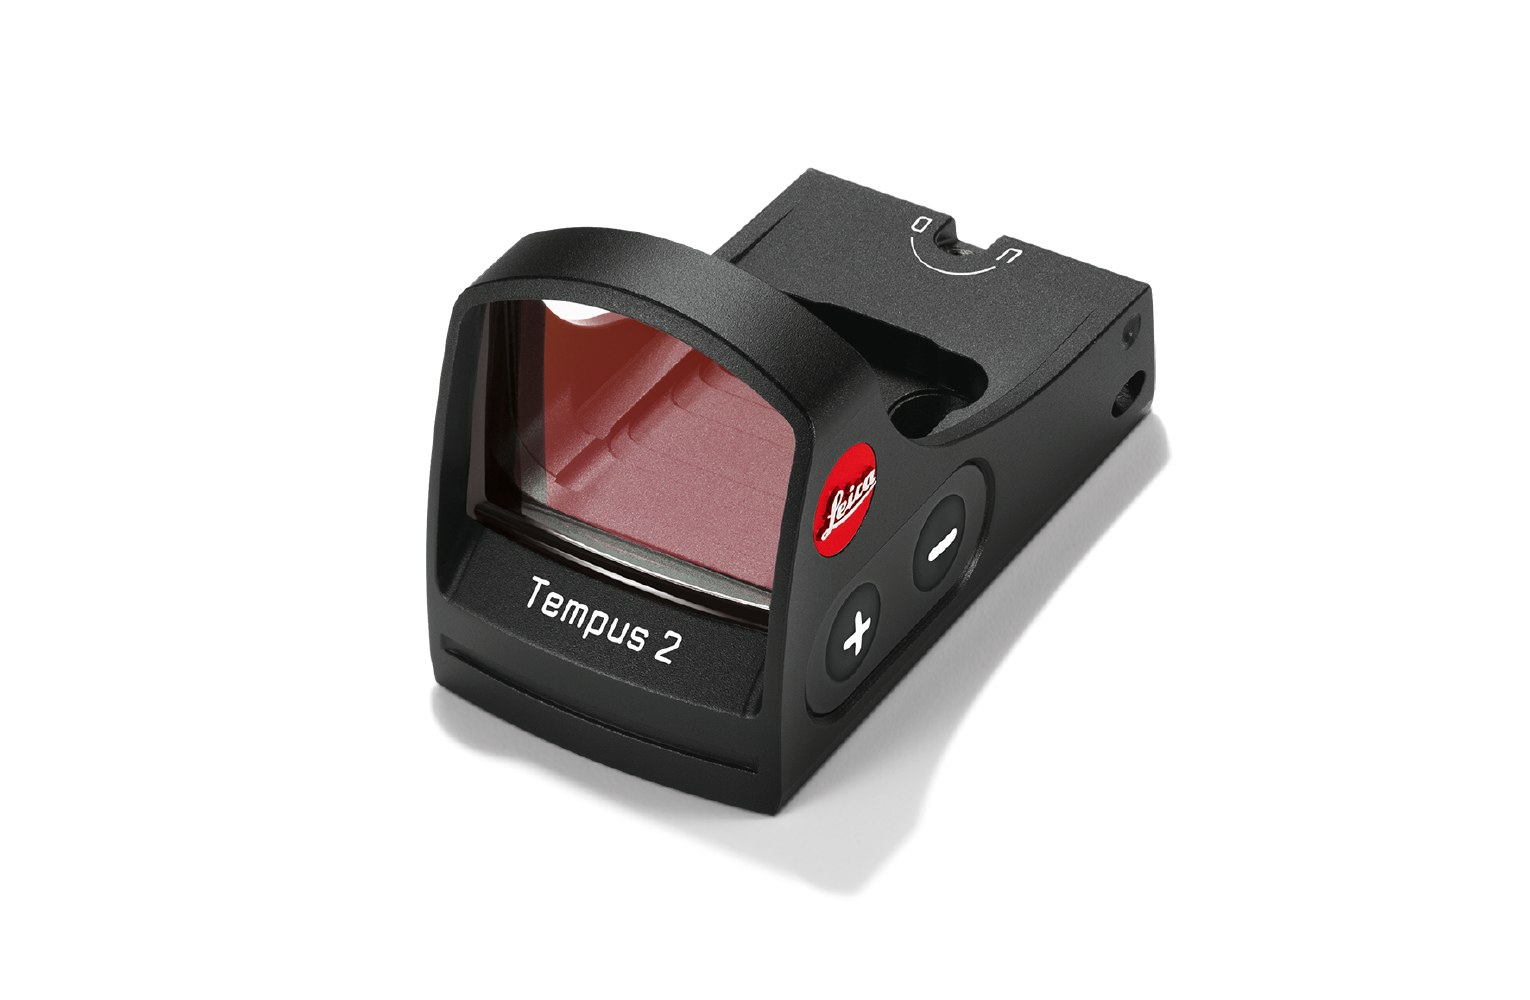 Rotpunktvisier Tempus 2 von Leica mit besonders scharfem Leuchtpunkt